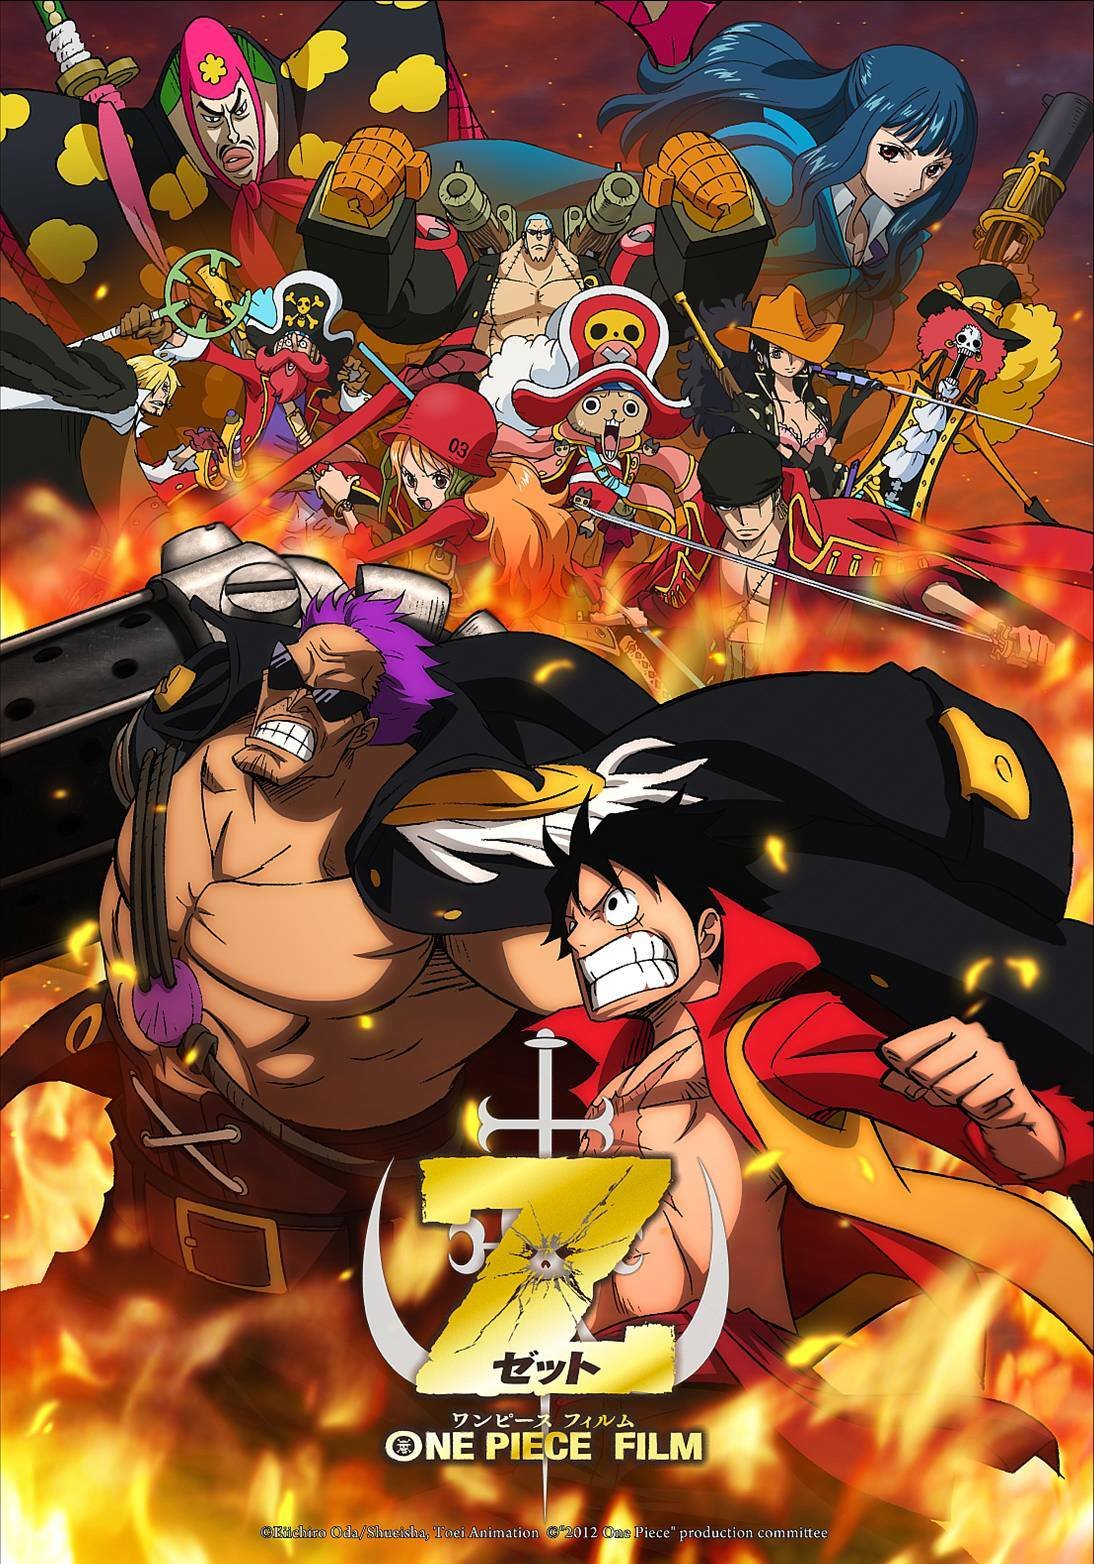 One Piece Z the movie